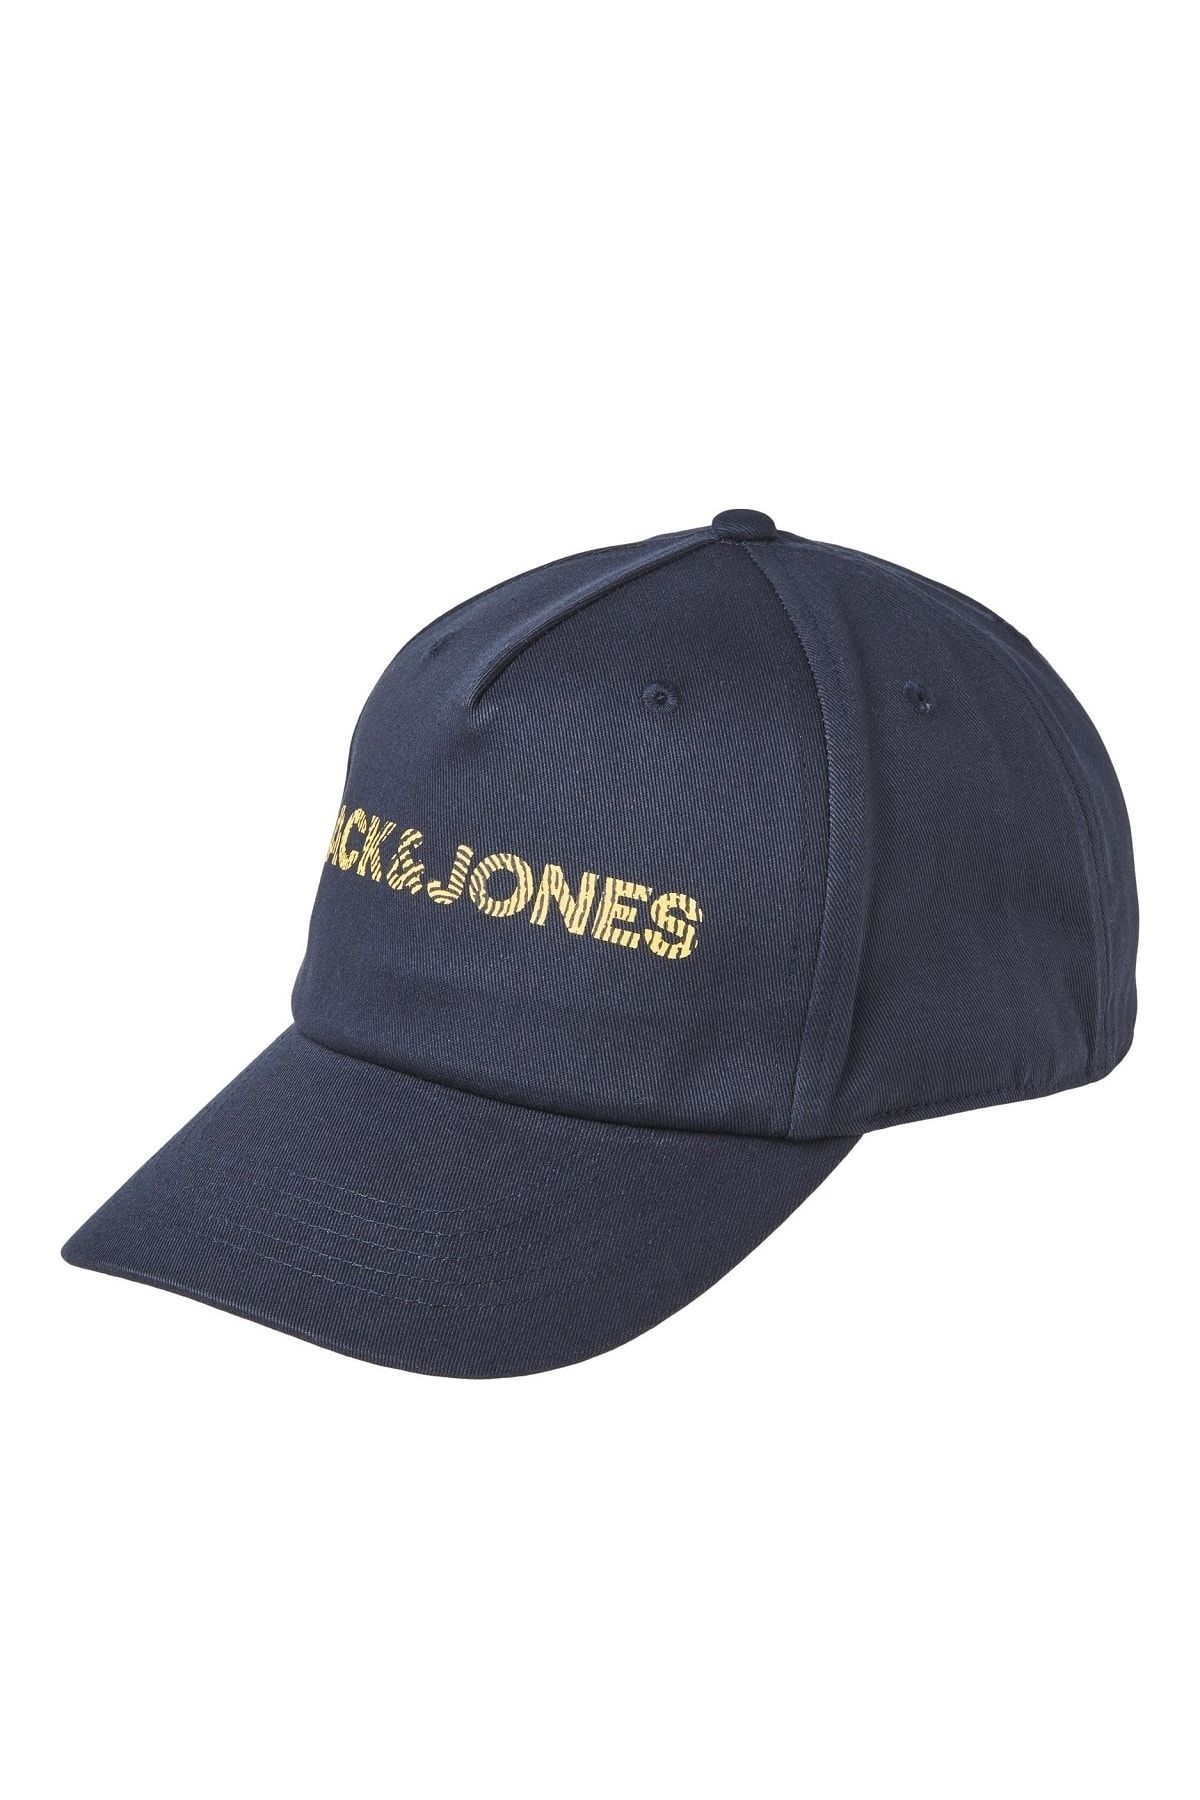 Jack & Jones Jack Jones Yazılı Erkek Şapka 12235403